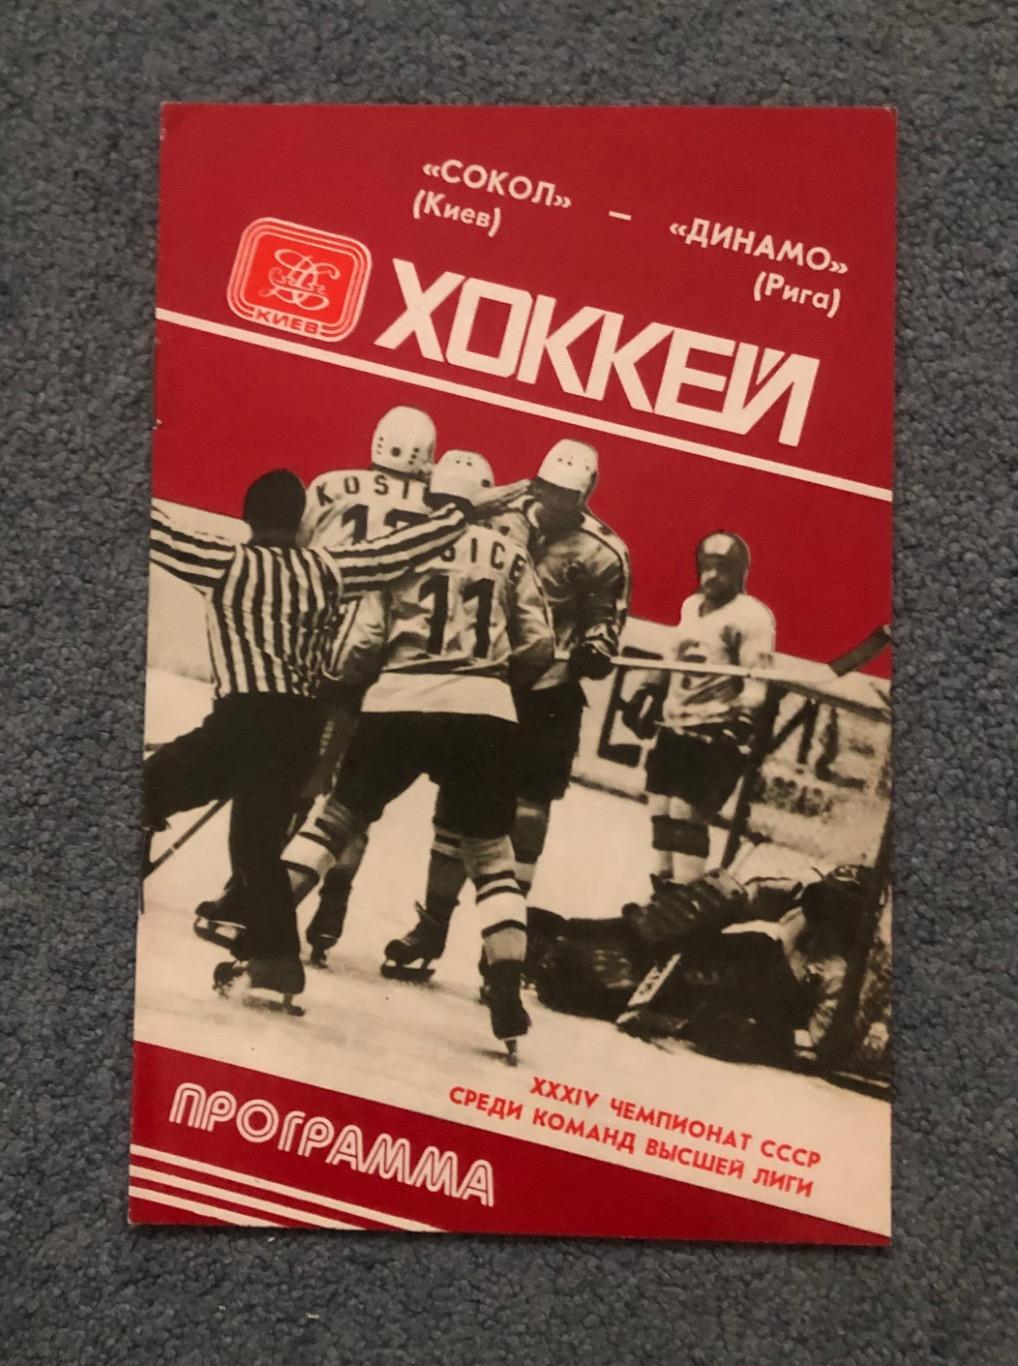 Сокол Киев - Динамо Рига, 29.11.1979